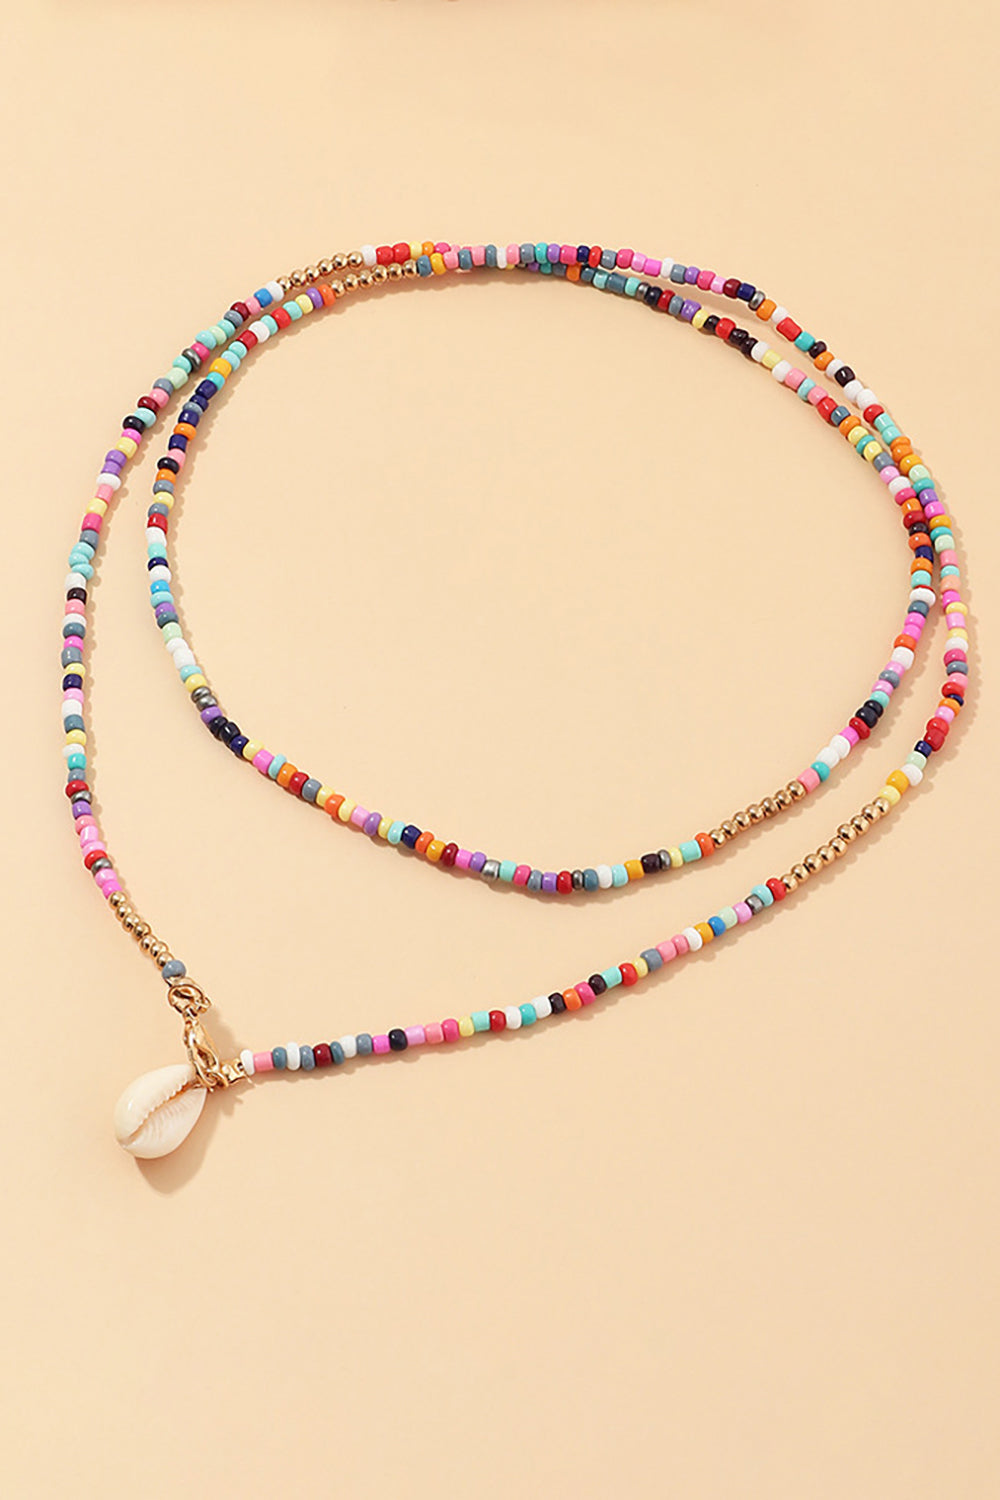 Colorful Boho Style Necklace